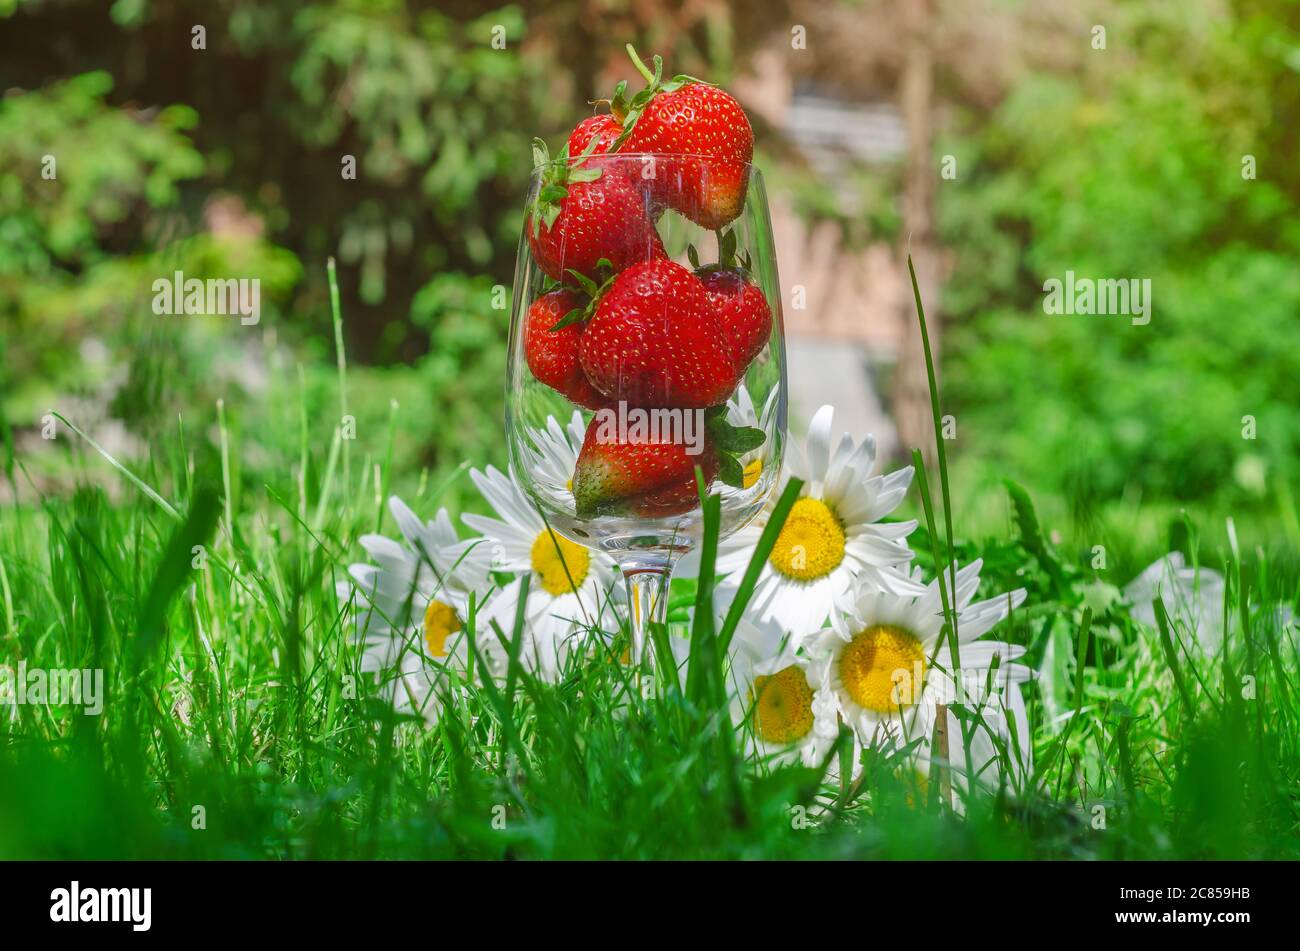 Fragole rosse mature in un bicchiere sull'erba verde, grandi margherite si trovano fianco a fianco. Foto Stock